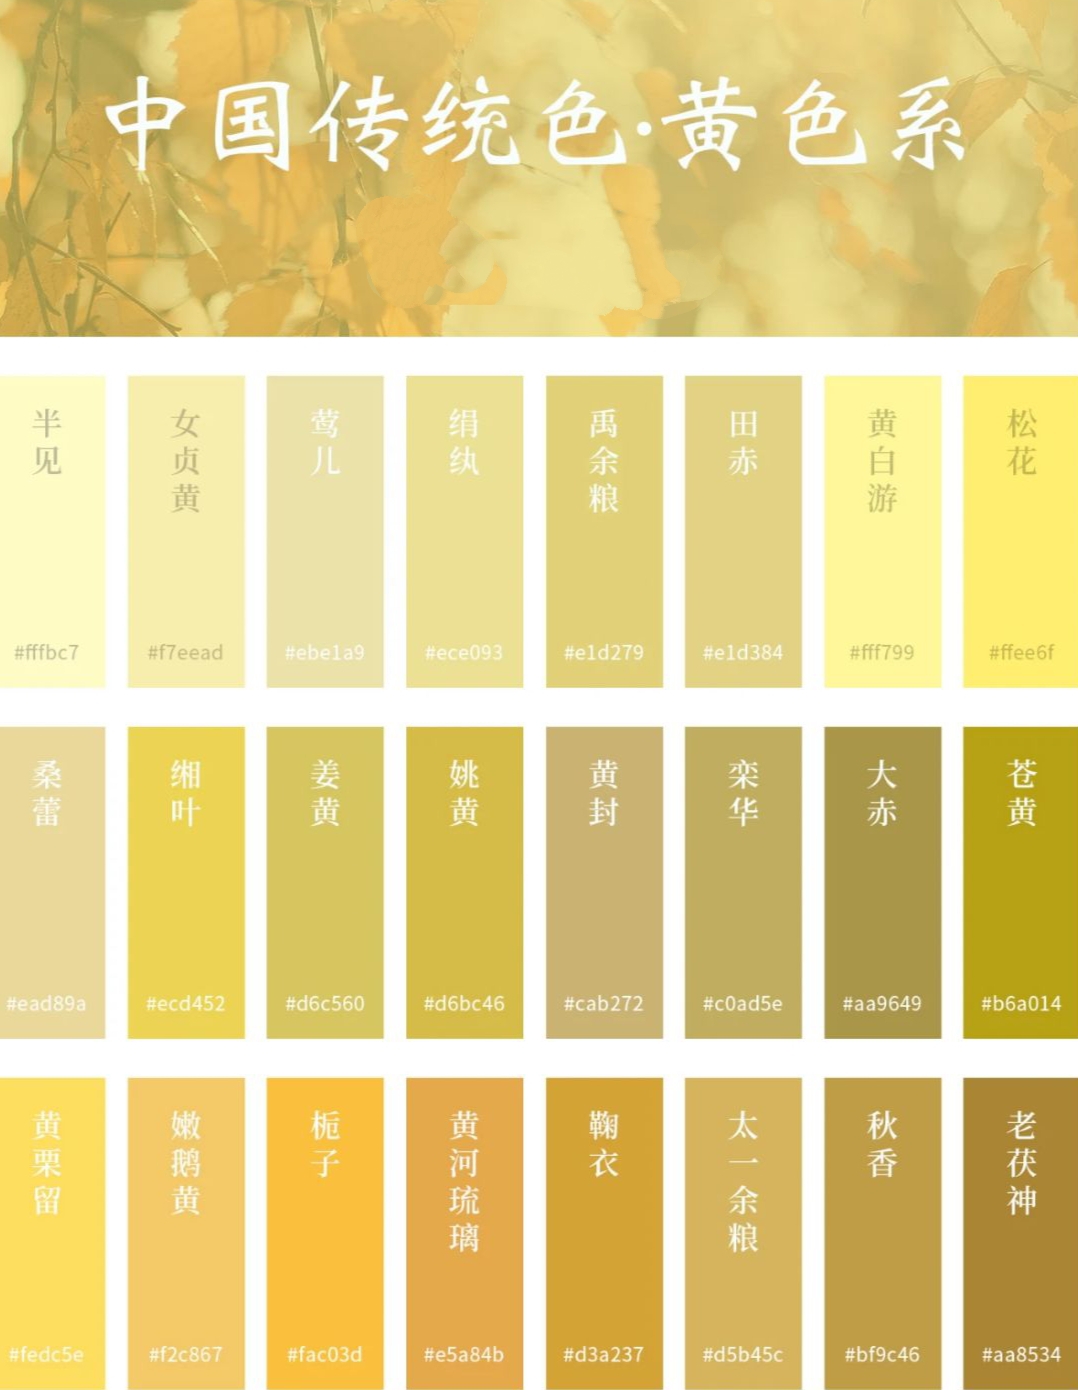 中国传统色系——黄色系
一年好景君须记，最是橙黄橘绿时。——《赠刘景文》
西南科技大学雷普凡 制